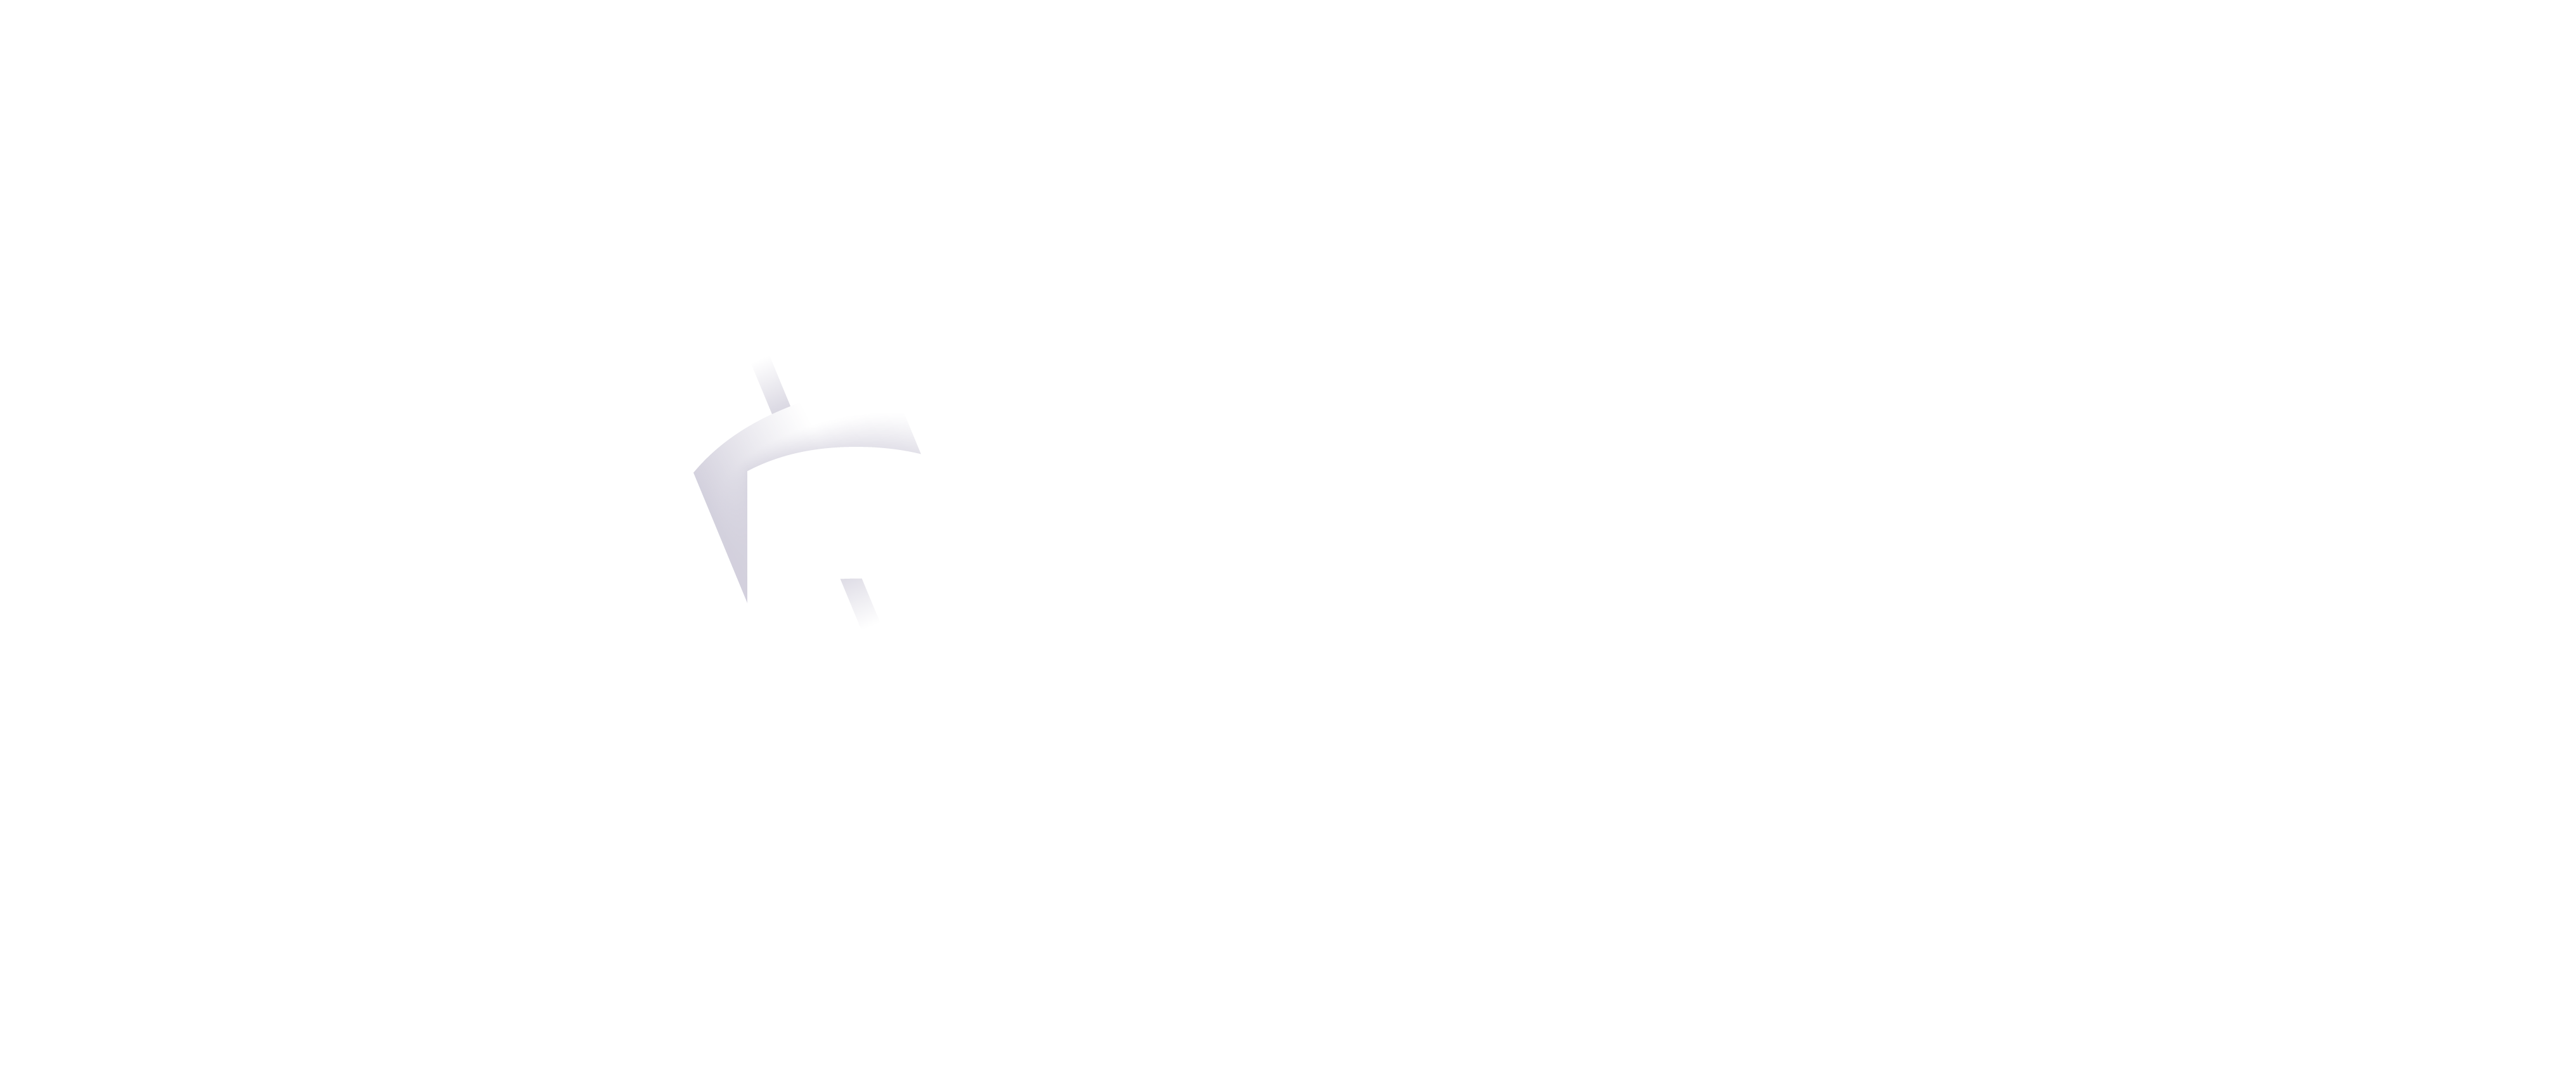 mobilepay